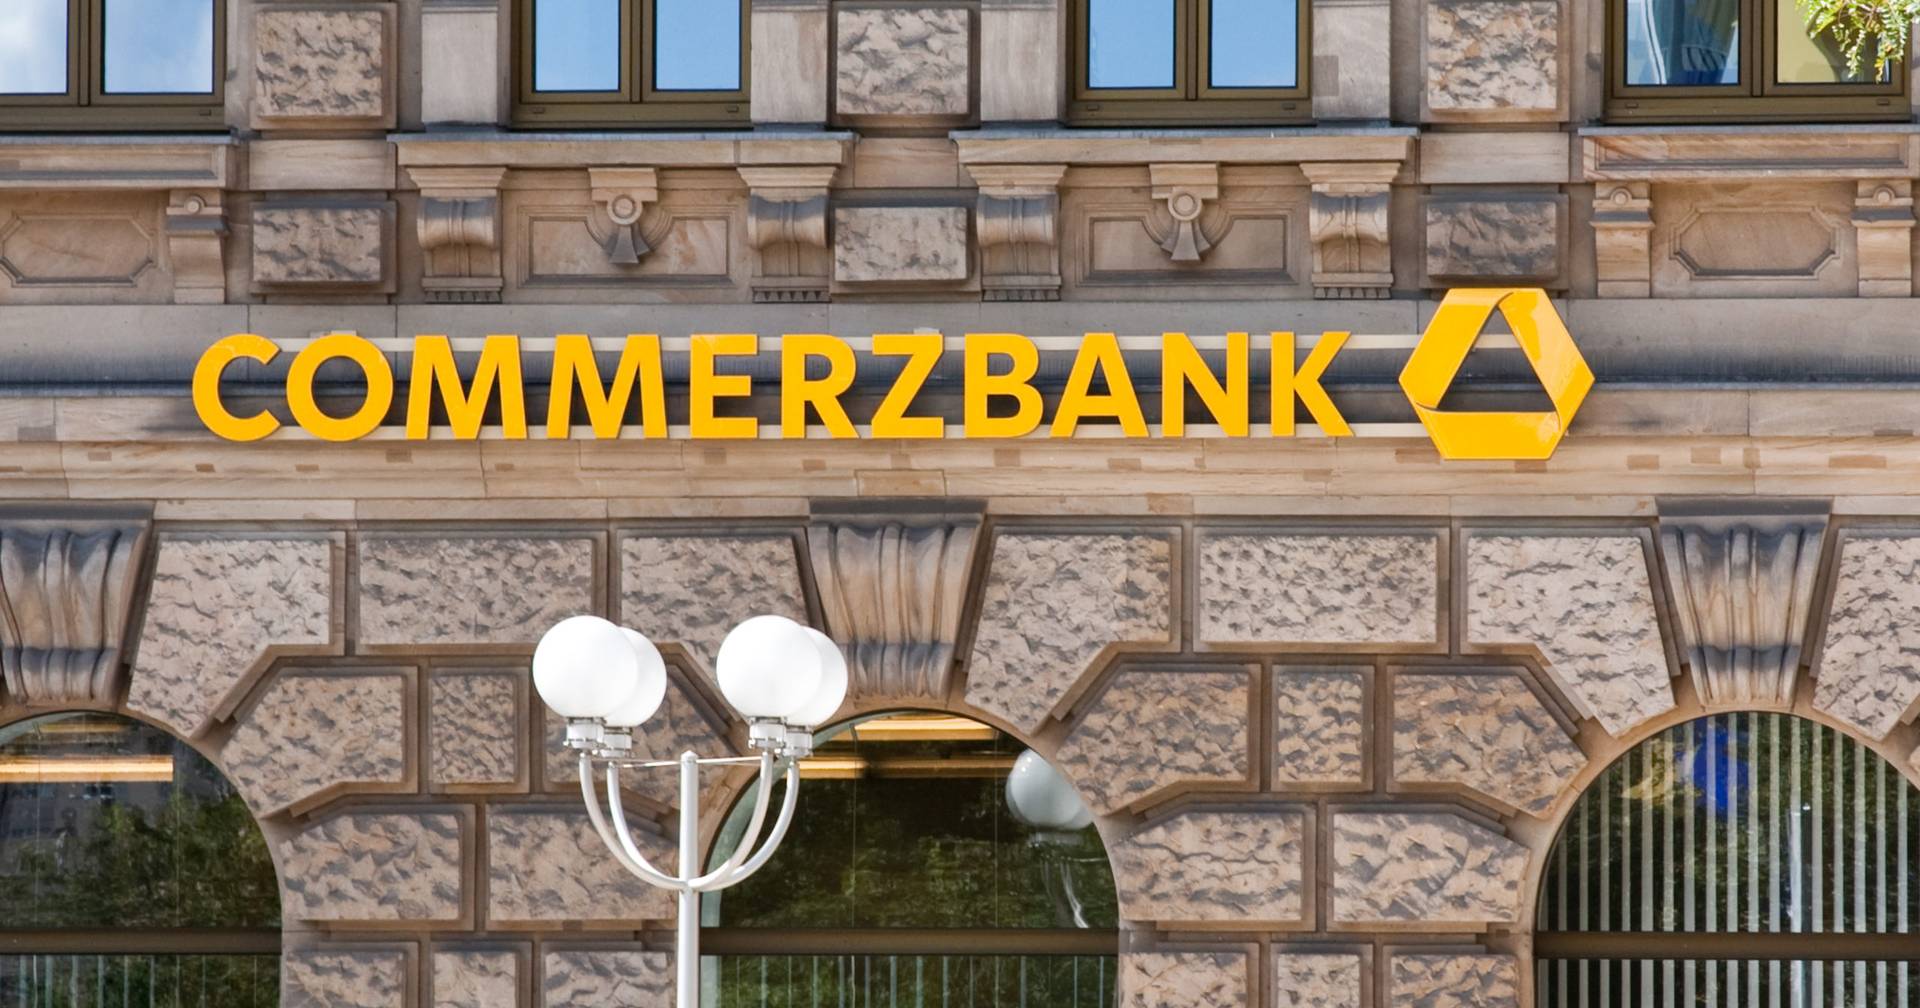 Commerzbank hält trotz mBank-Einfluss an Gewinnprognose von über 1.000 Millionen Euro fest